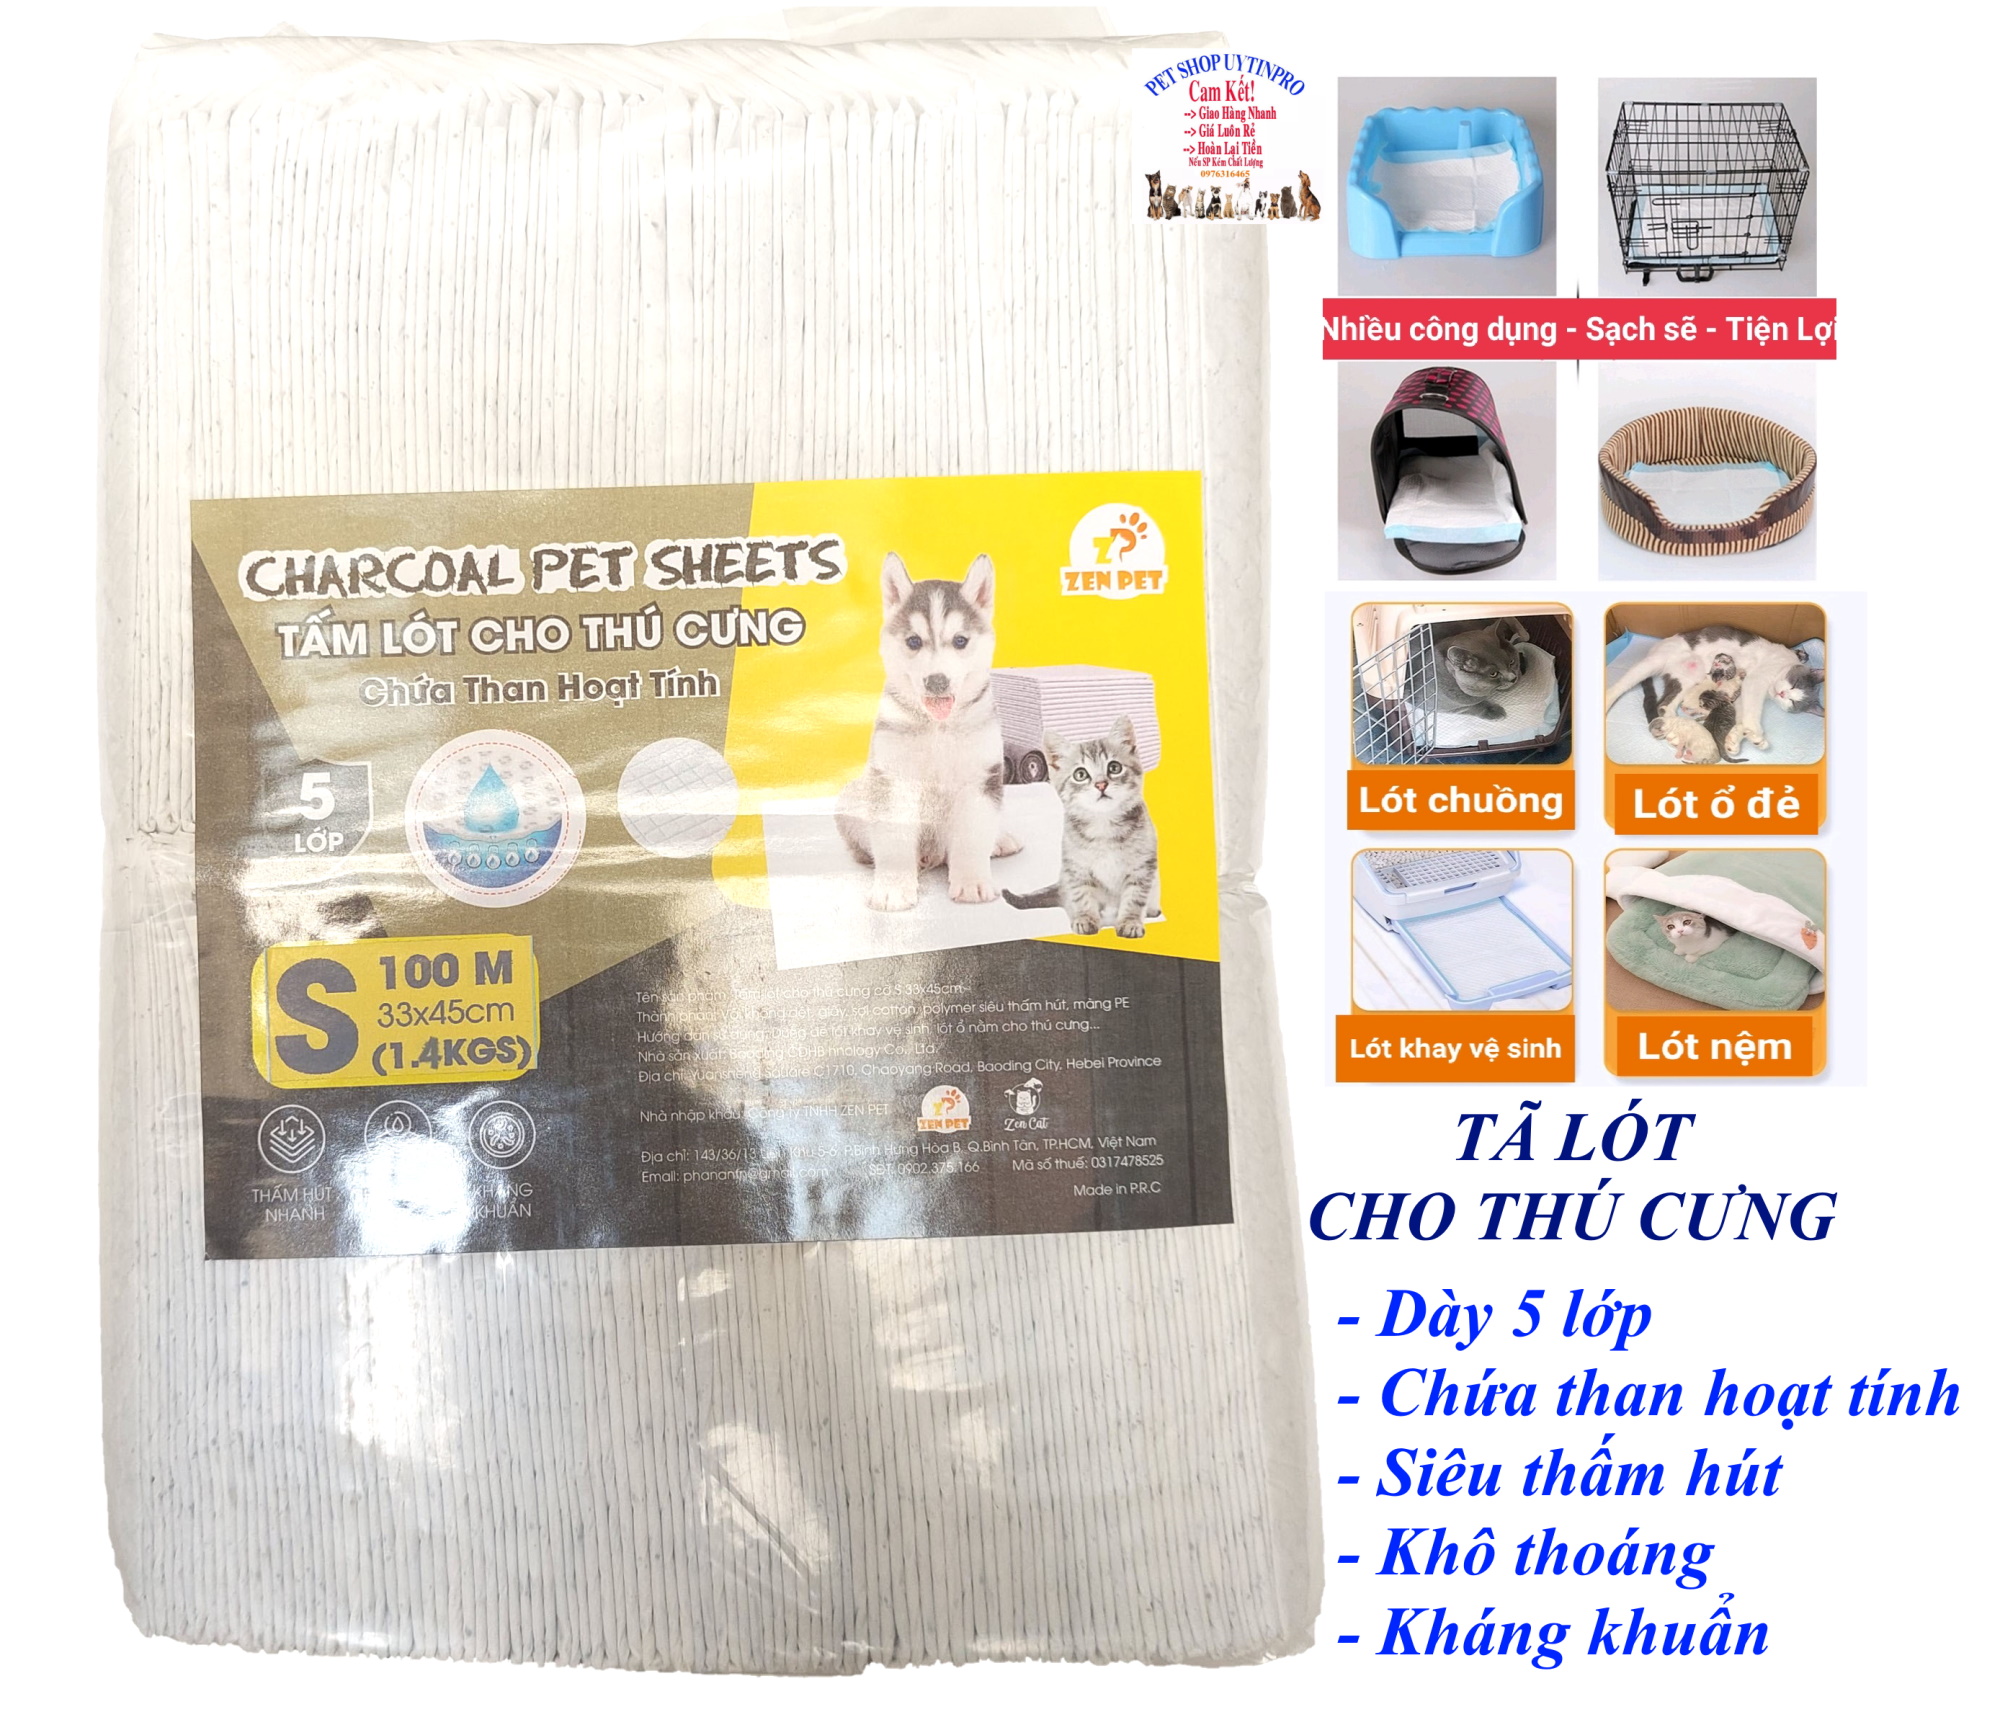 Tã lót chuồng cho Chó Mèo Chứa than hoạt tính Zen Pet Charcoal Pet Sheets 5 lớp Siêu thấm hút, khô thoáng, kháng khuẩn